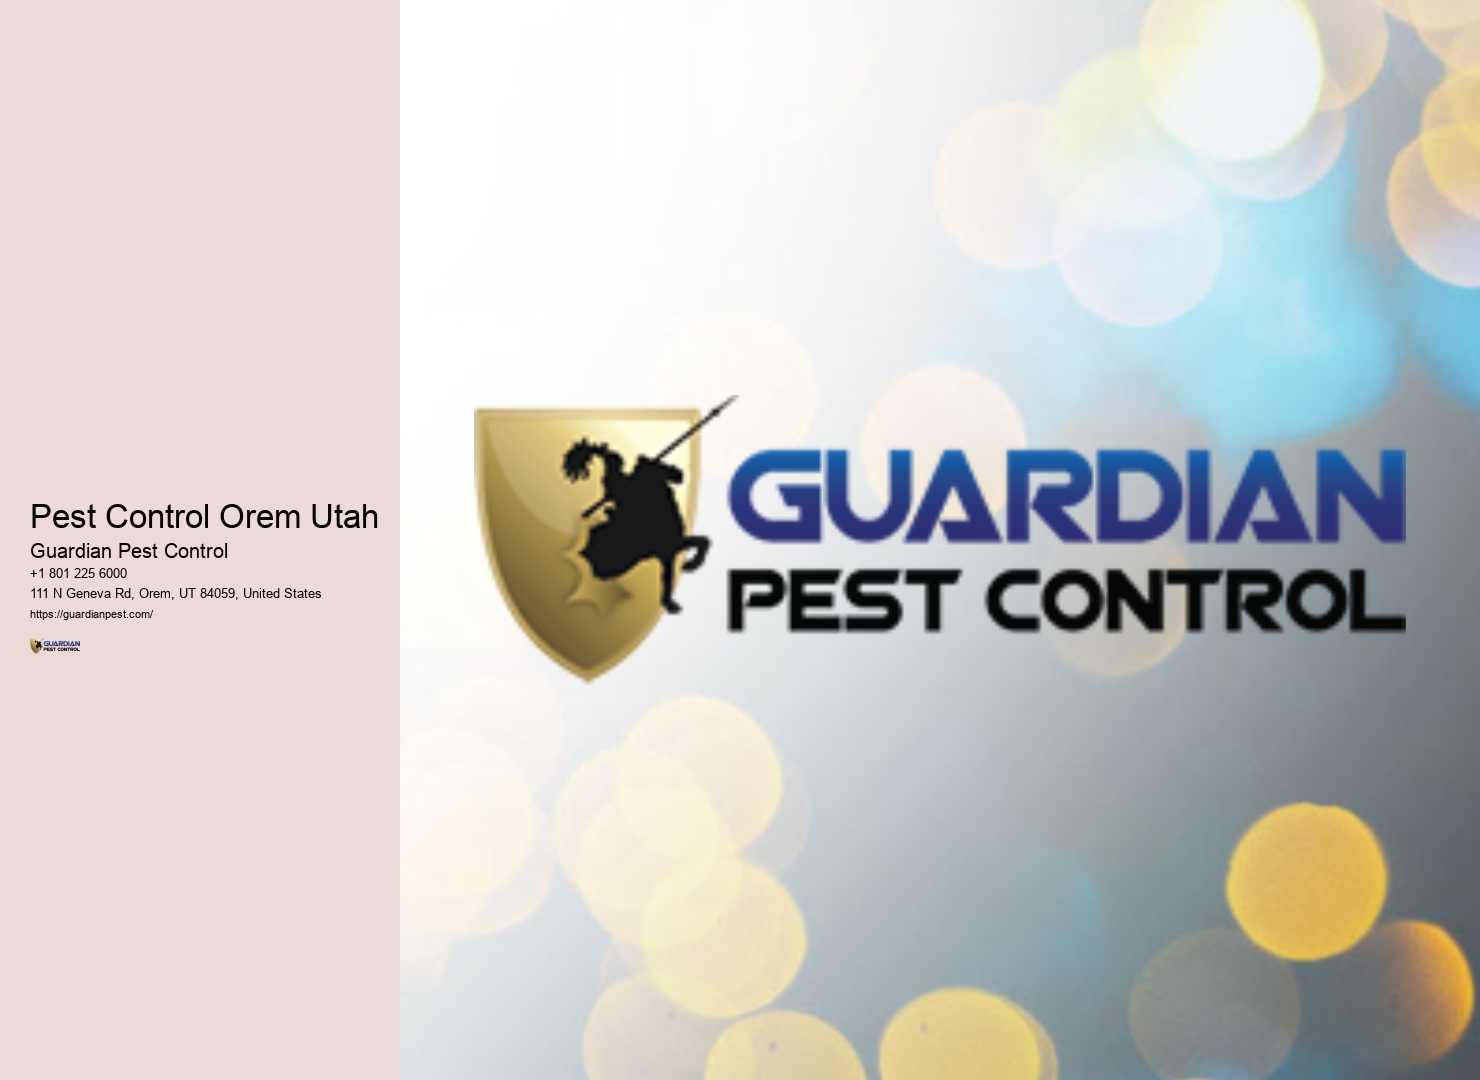 Pest Control Orem Utah